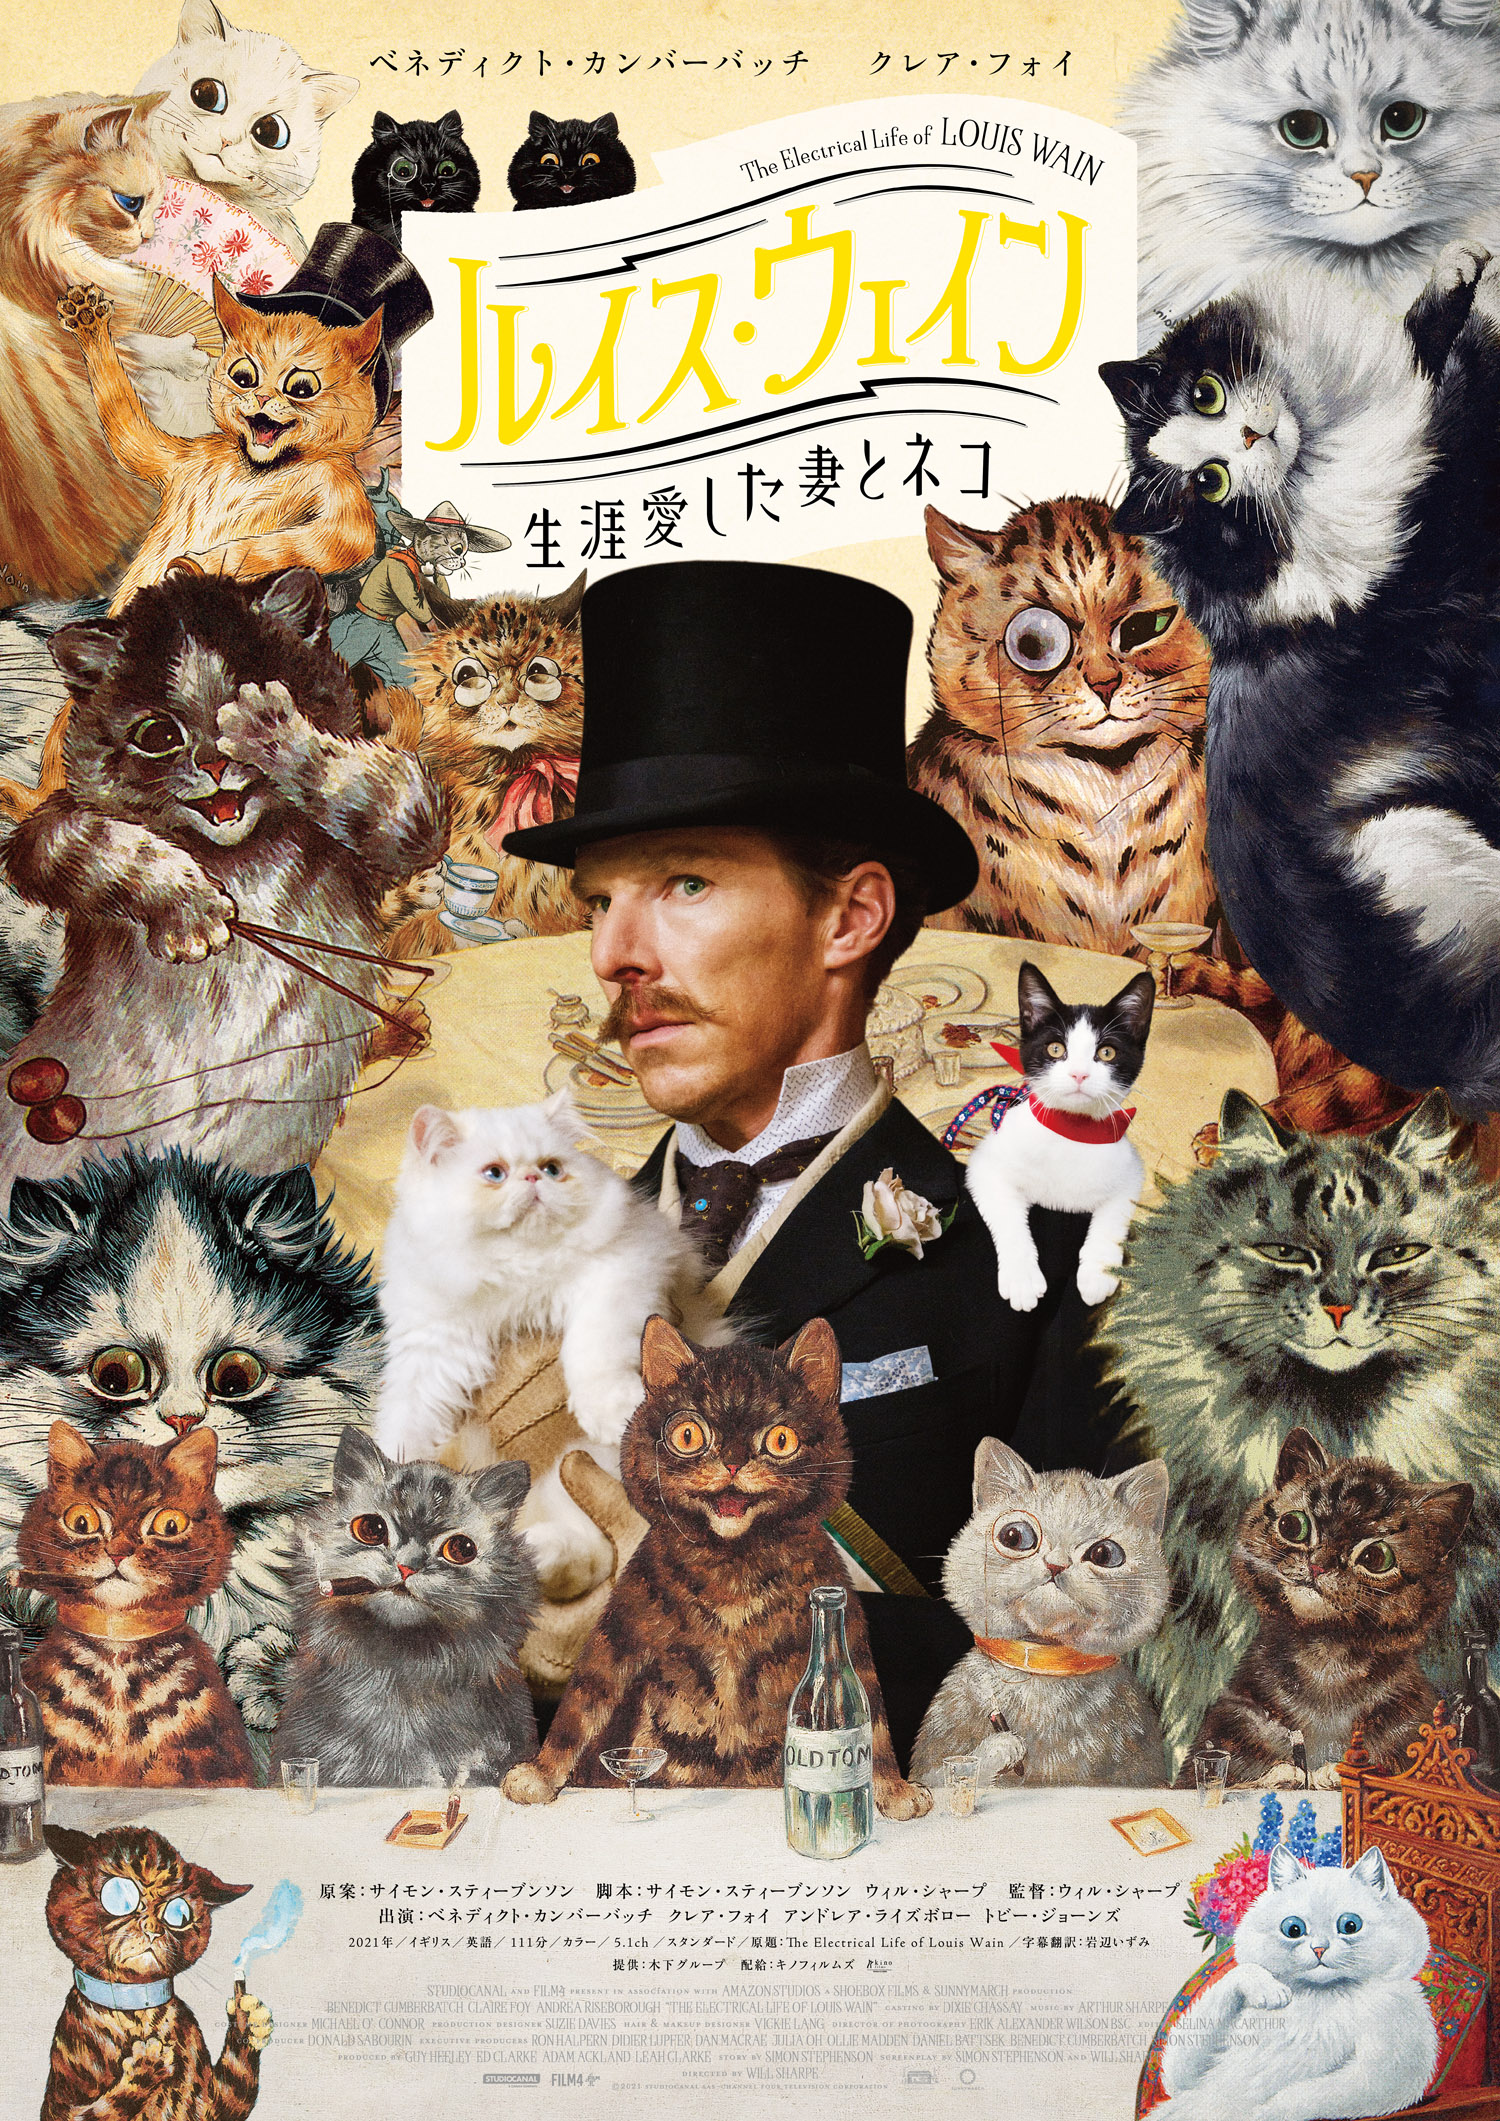 猫の絵で一世を風靡したイラストレーターの実話　映画『ルイス・ウェイン 生涯愛した妻とネコ』